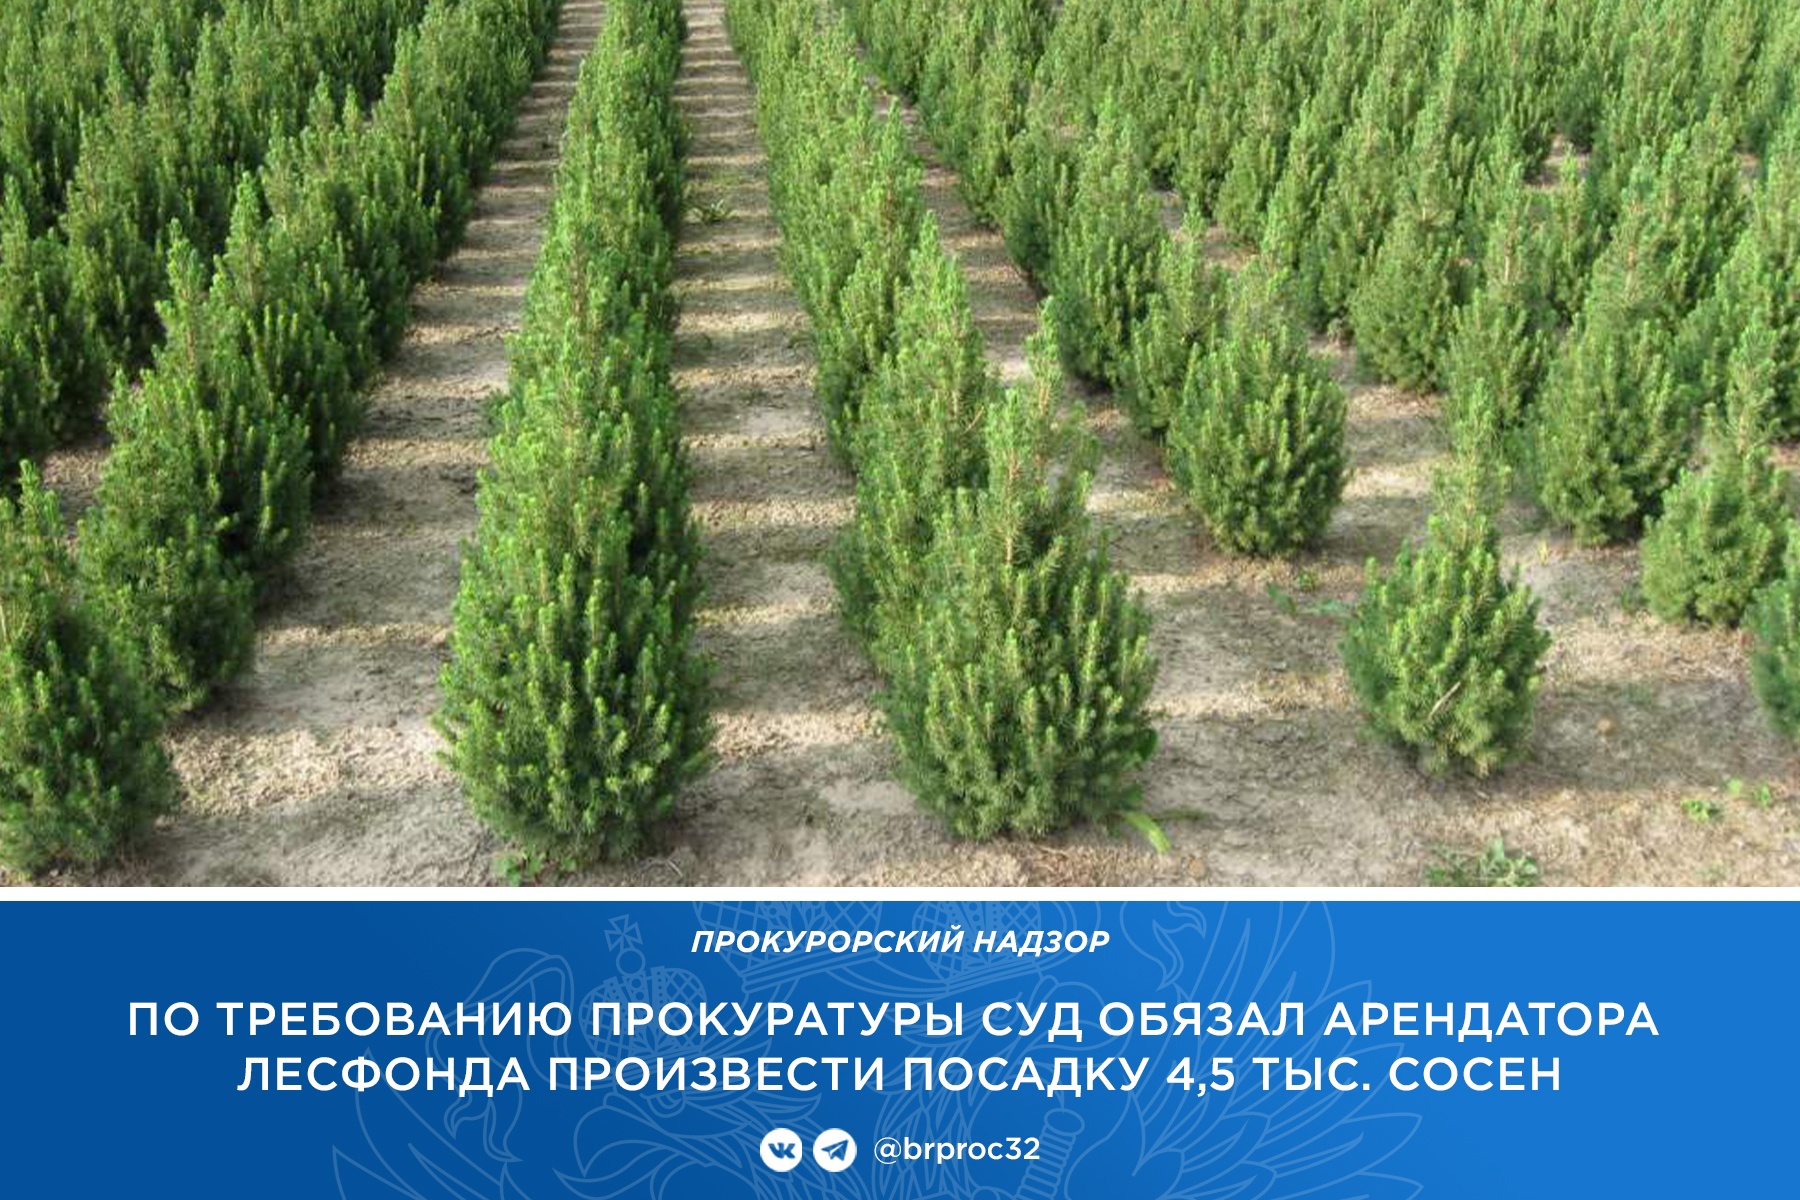 Брянский суд обязал арендатора посадить 4,5 тысячи сосен вместо вырубленных 198 деревьев